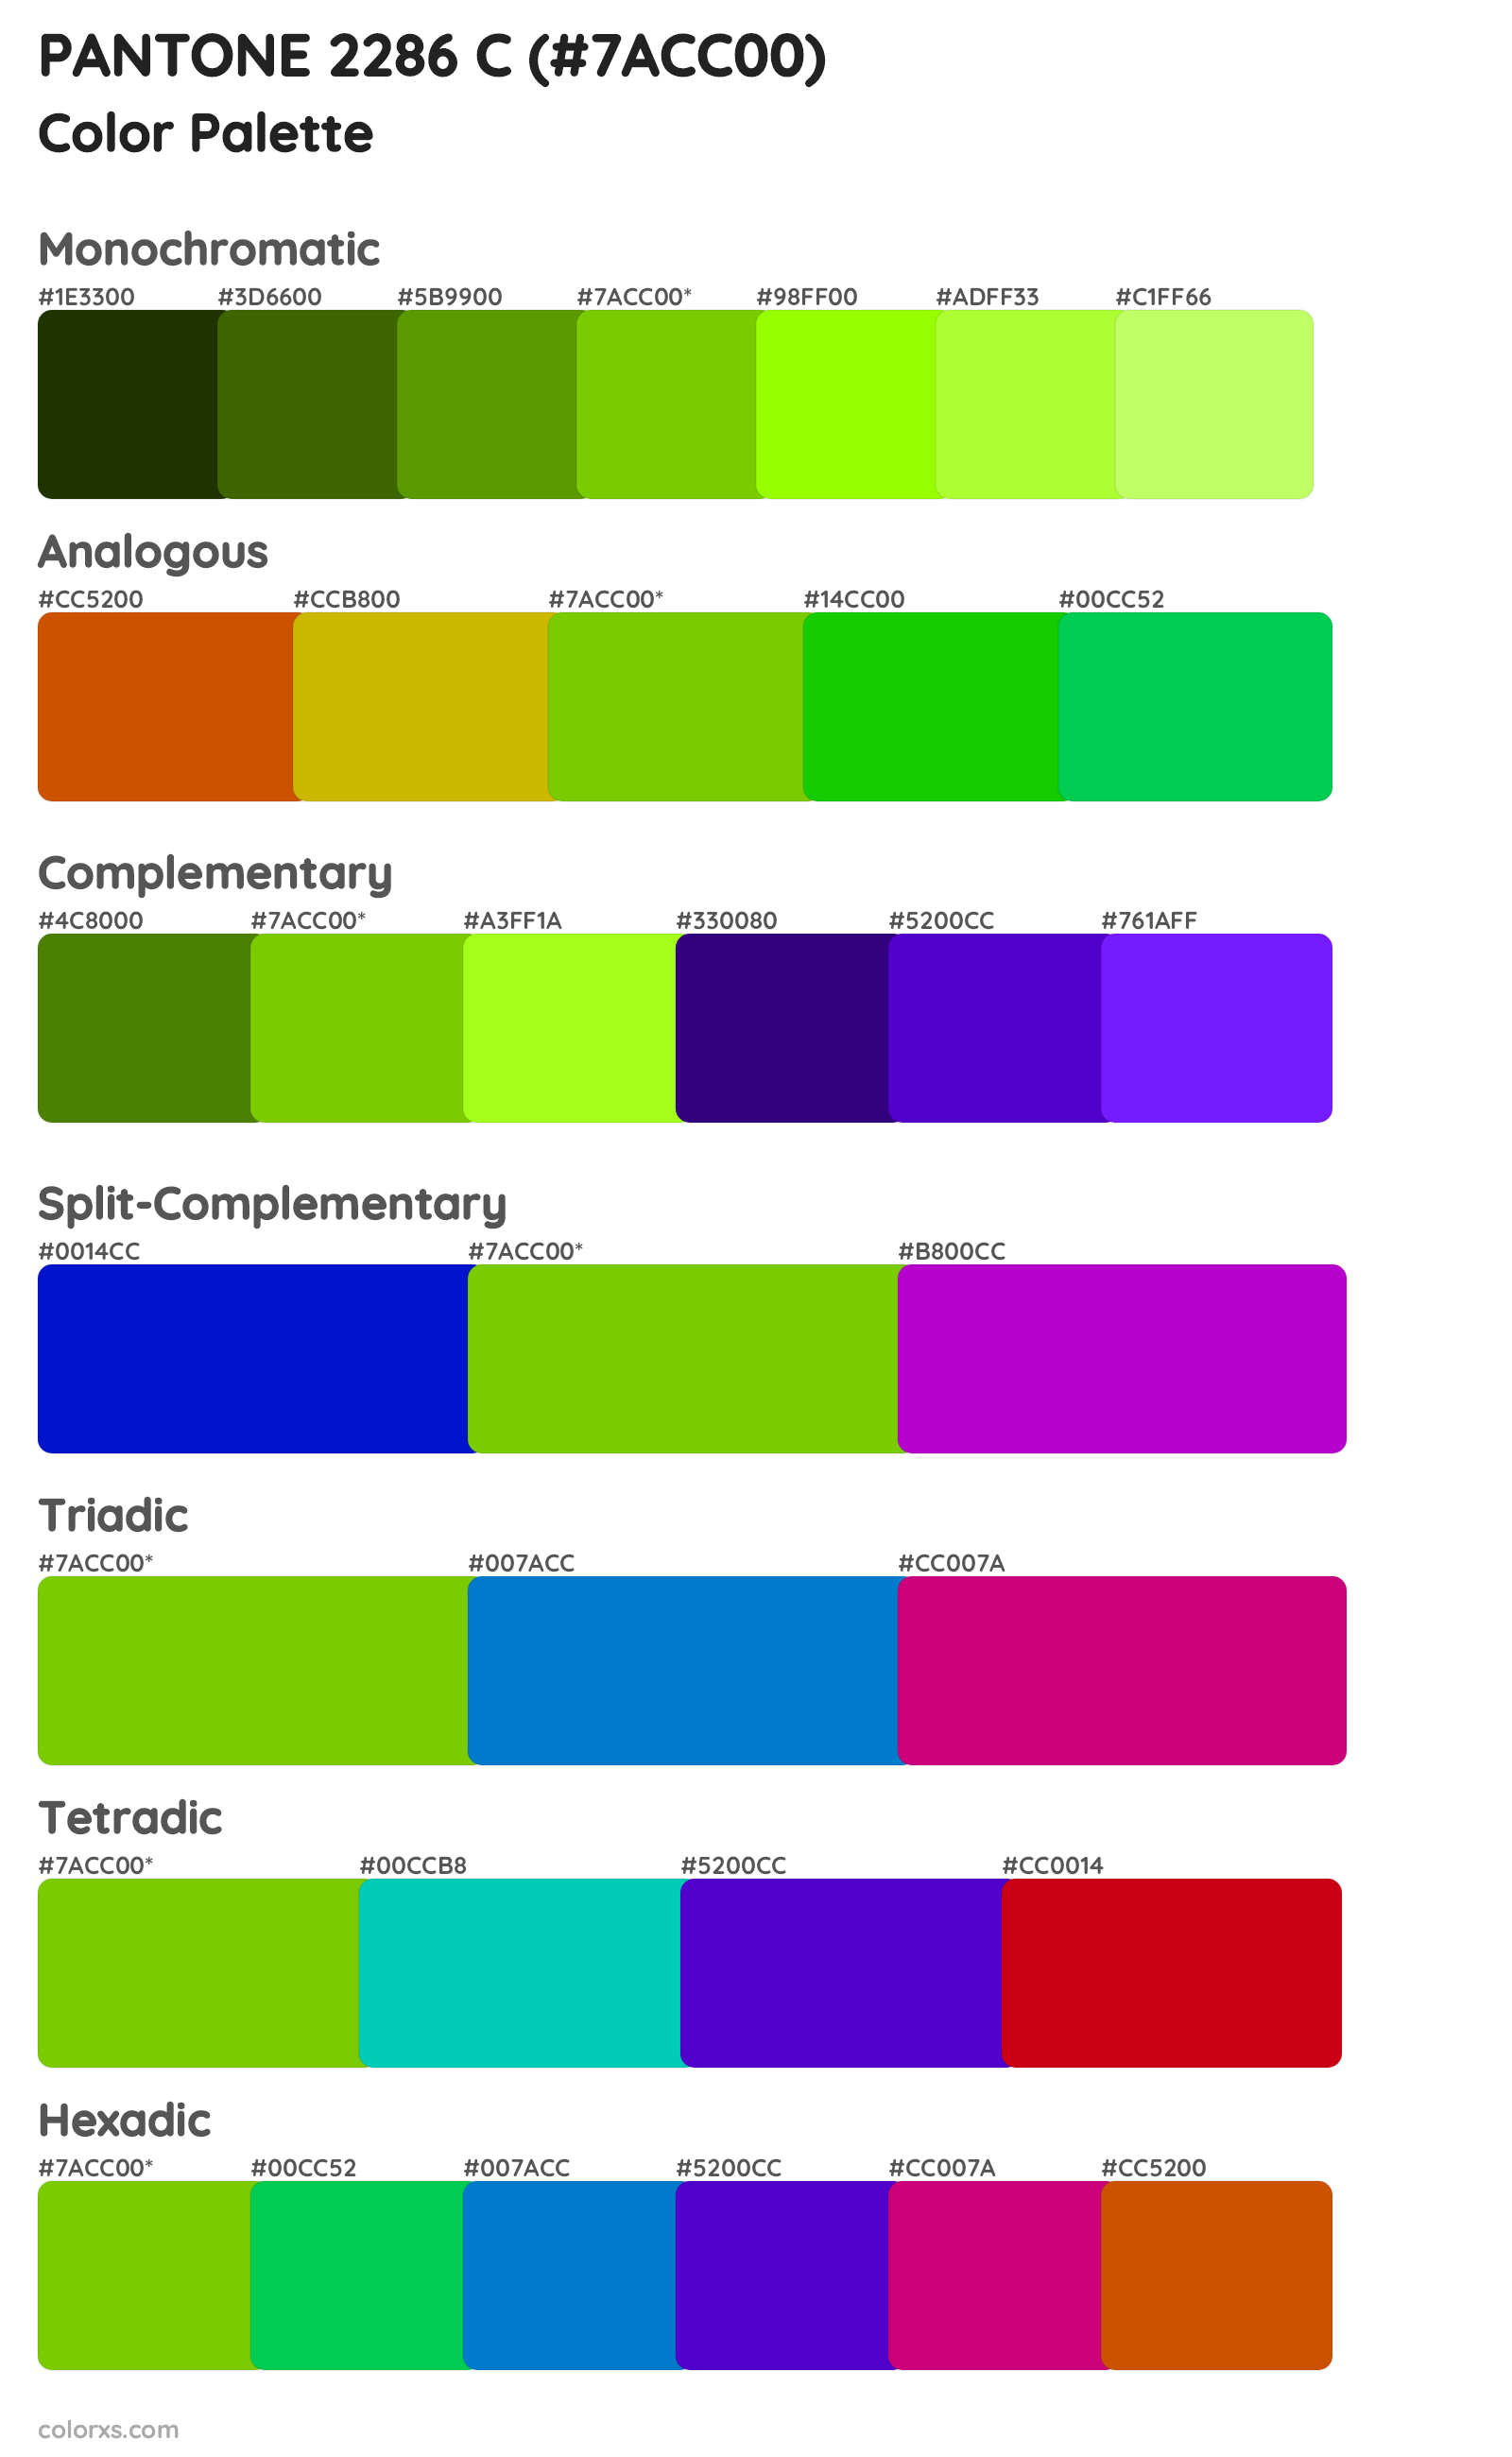 PANTONE 2286 C Color Scheme Palettes